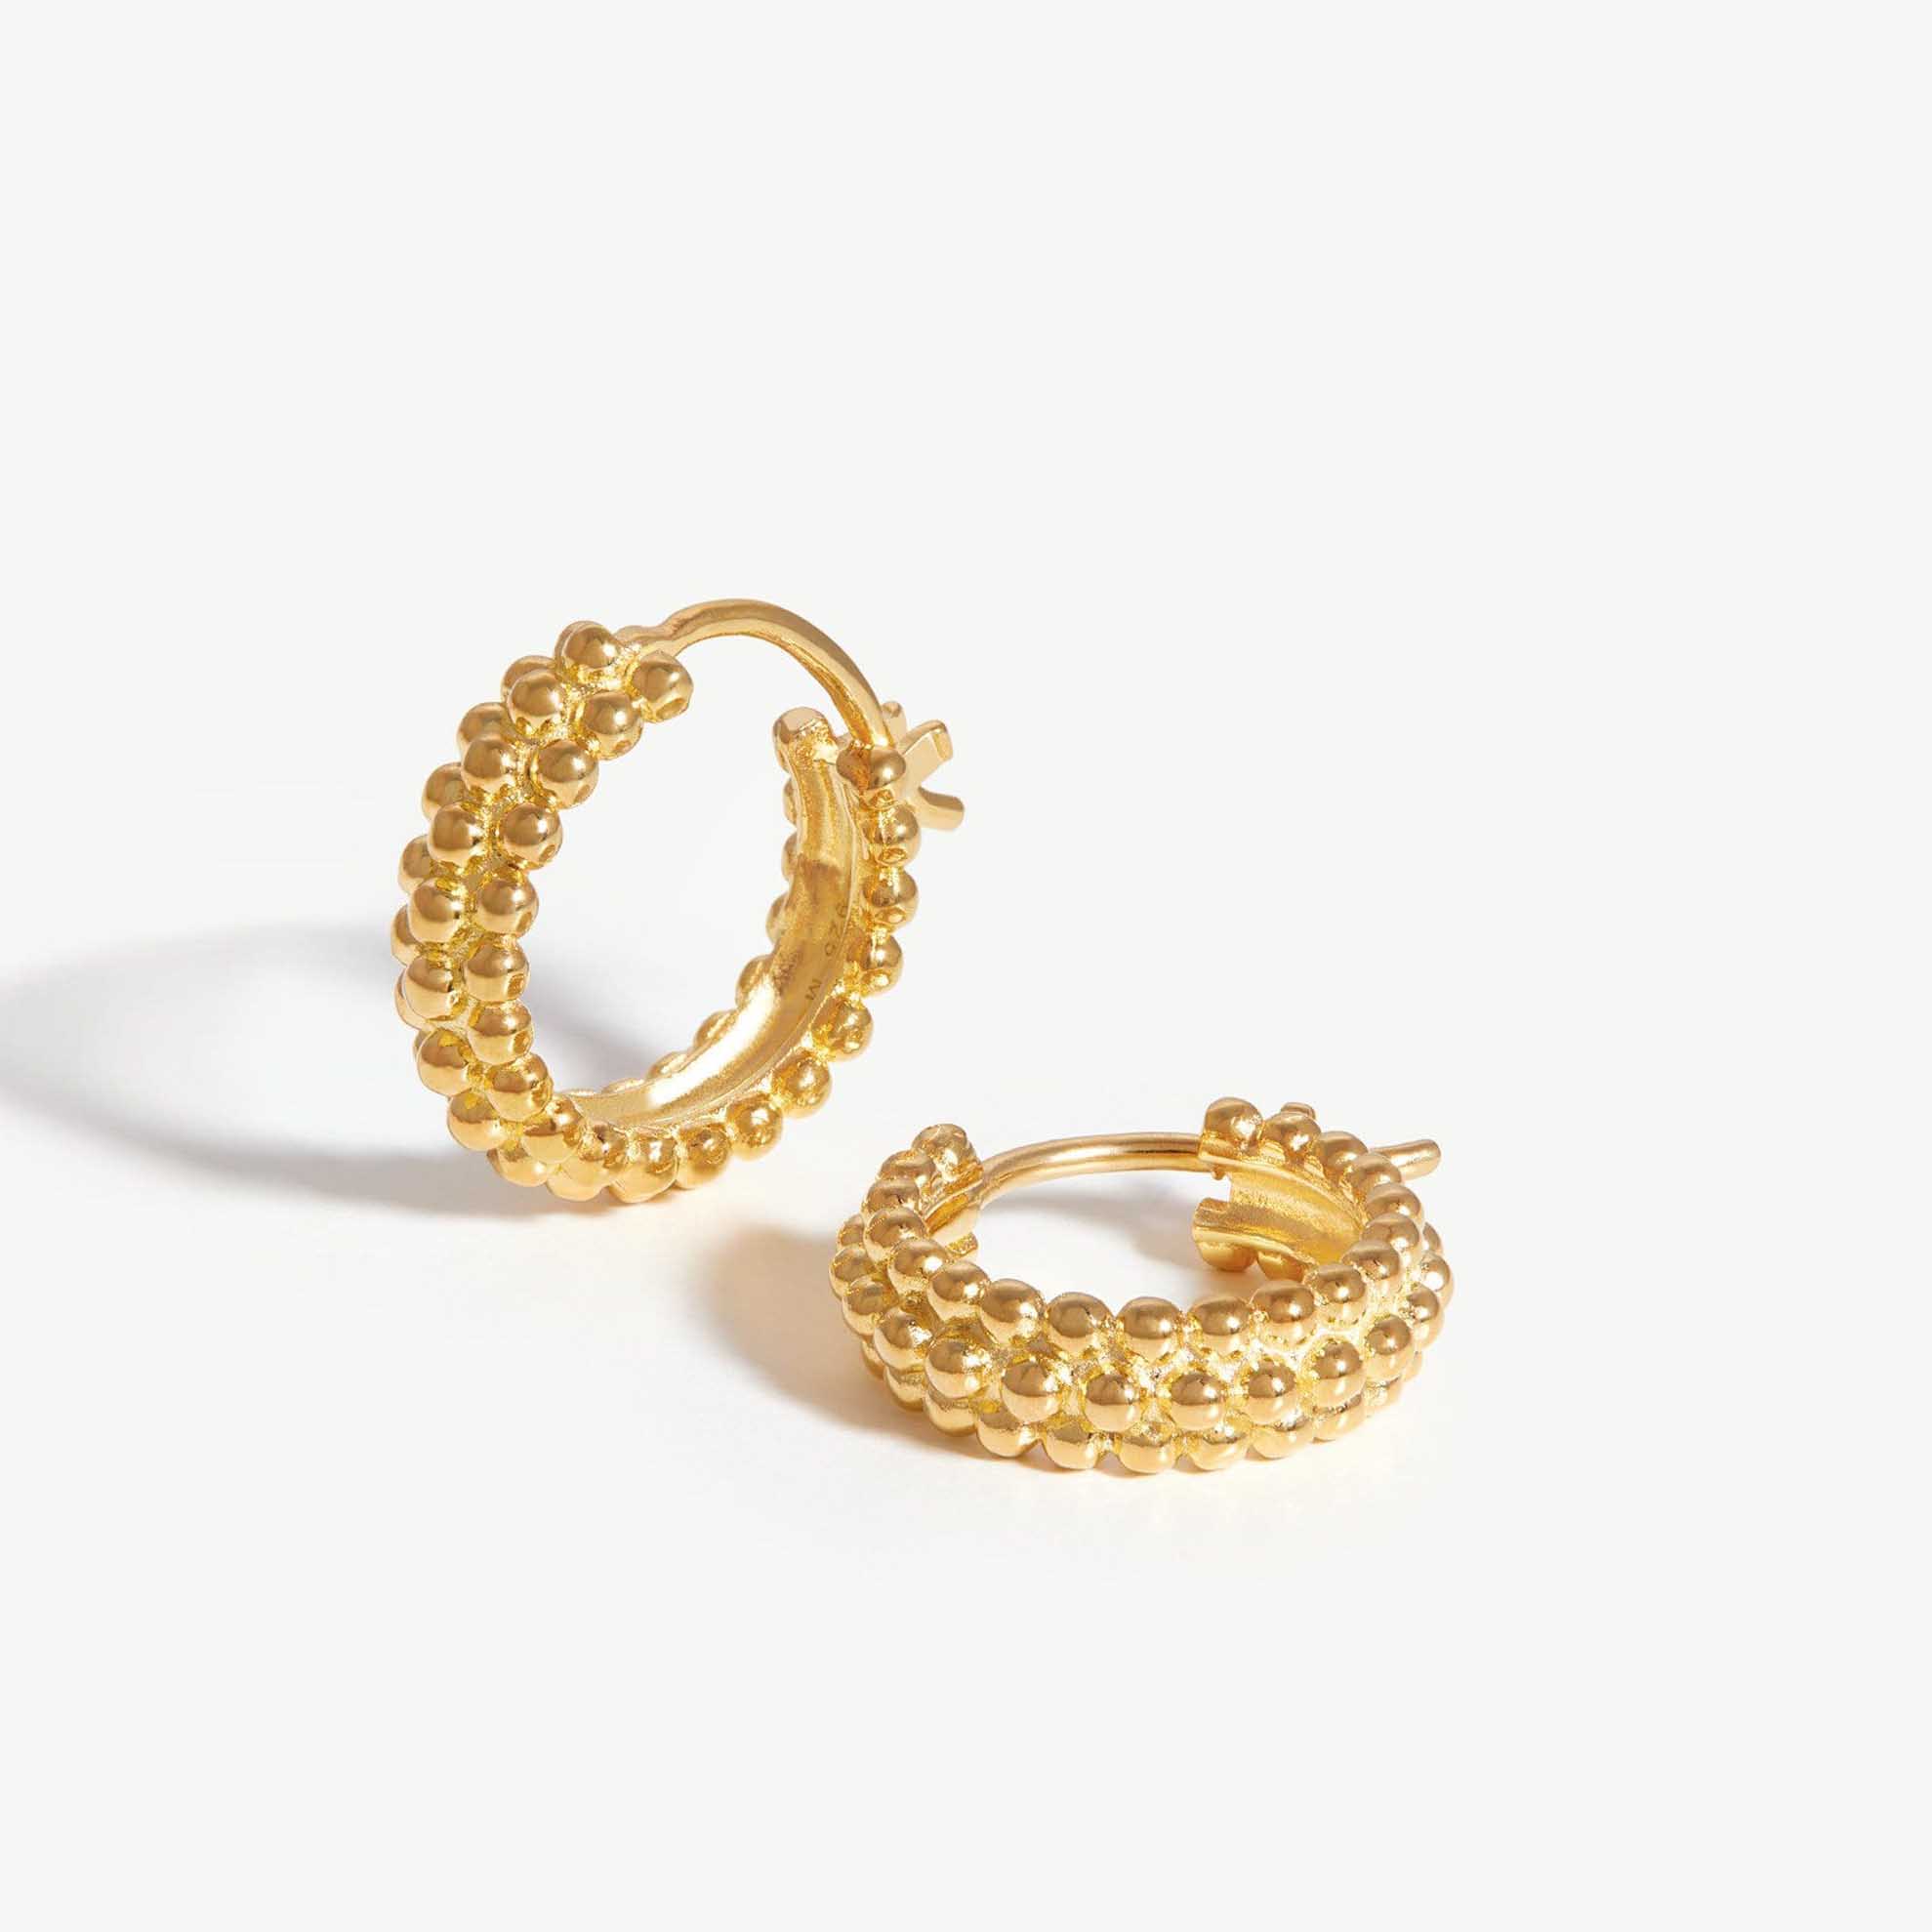 skabe brugerdefinerede håndlavede smykker med 18 karat guldfyldte øreringe